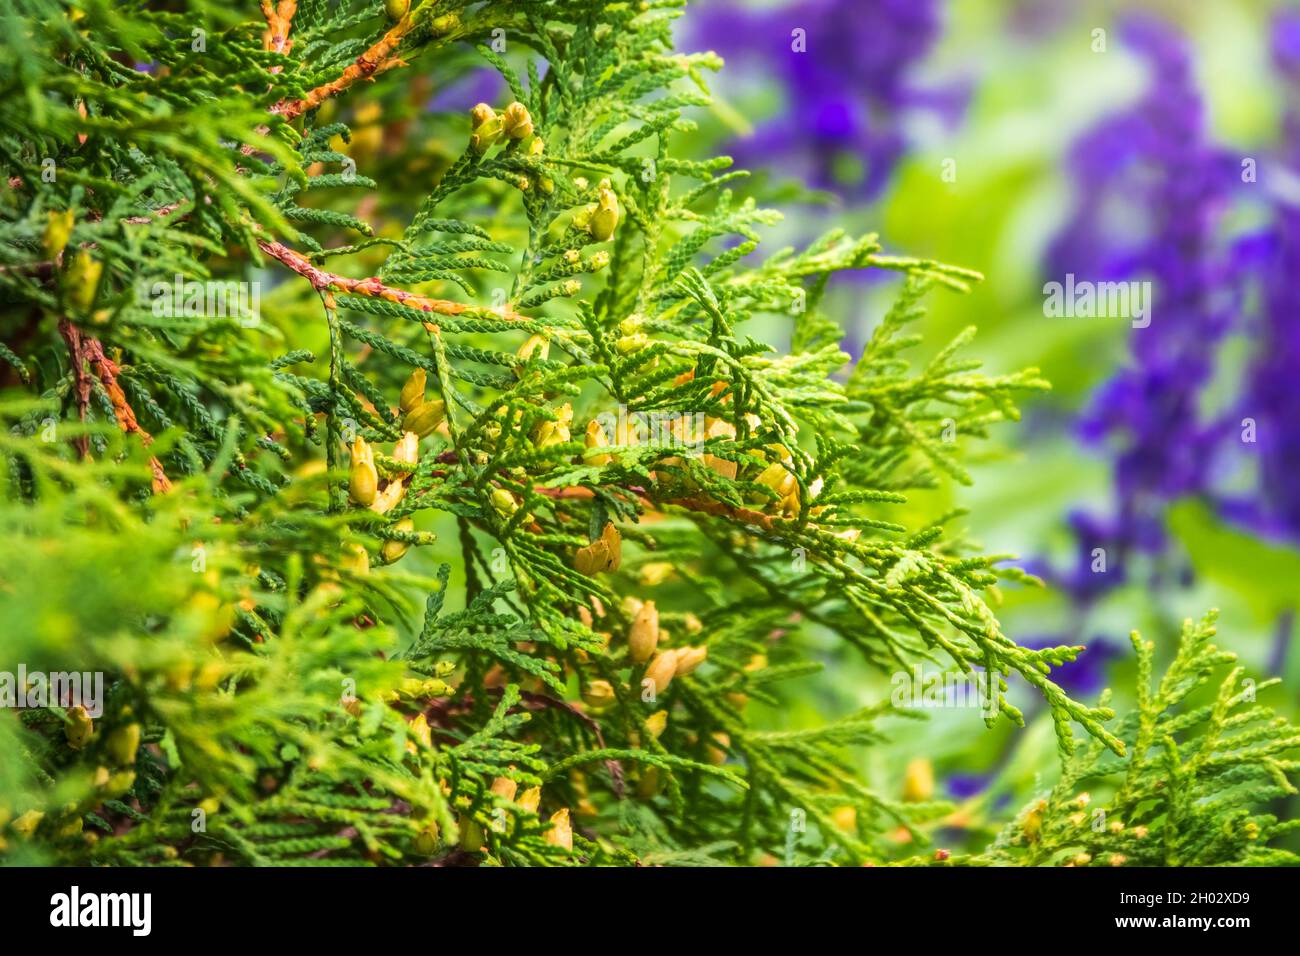 Le Bush de Thuja occidentalis est un conifères à feuilles persistantes. Gros plan de la branche de cèdre de cyprès avec un bouquet de cônes verts. Thuja occidentalis, également connu Banque D'Images